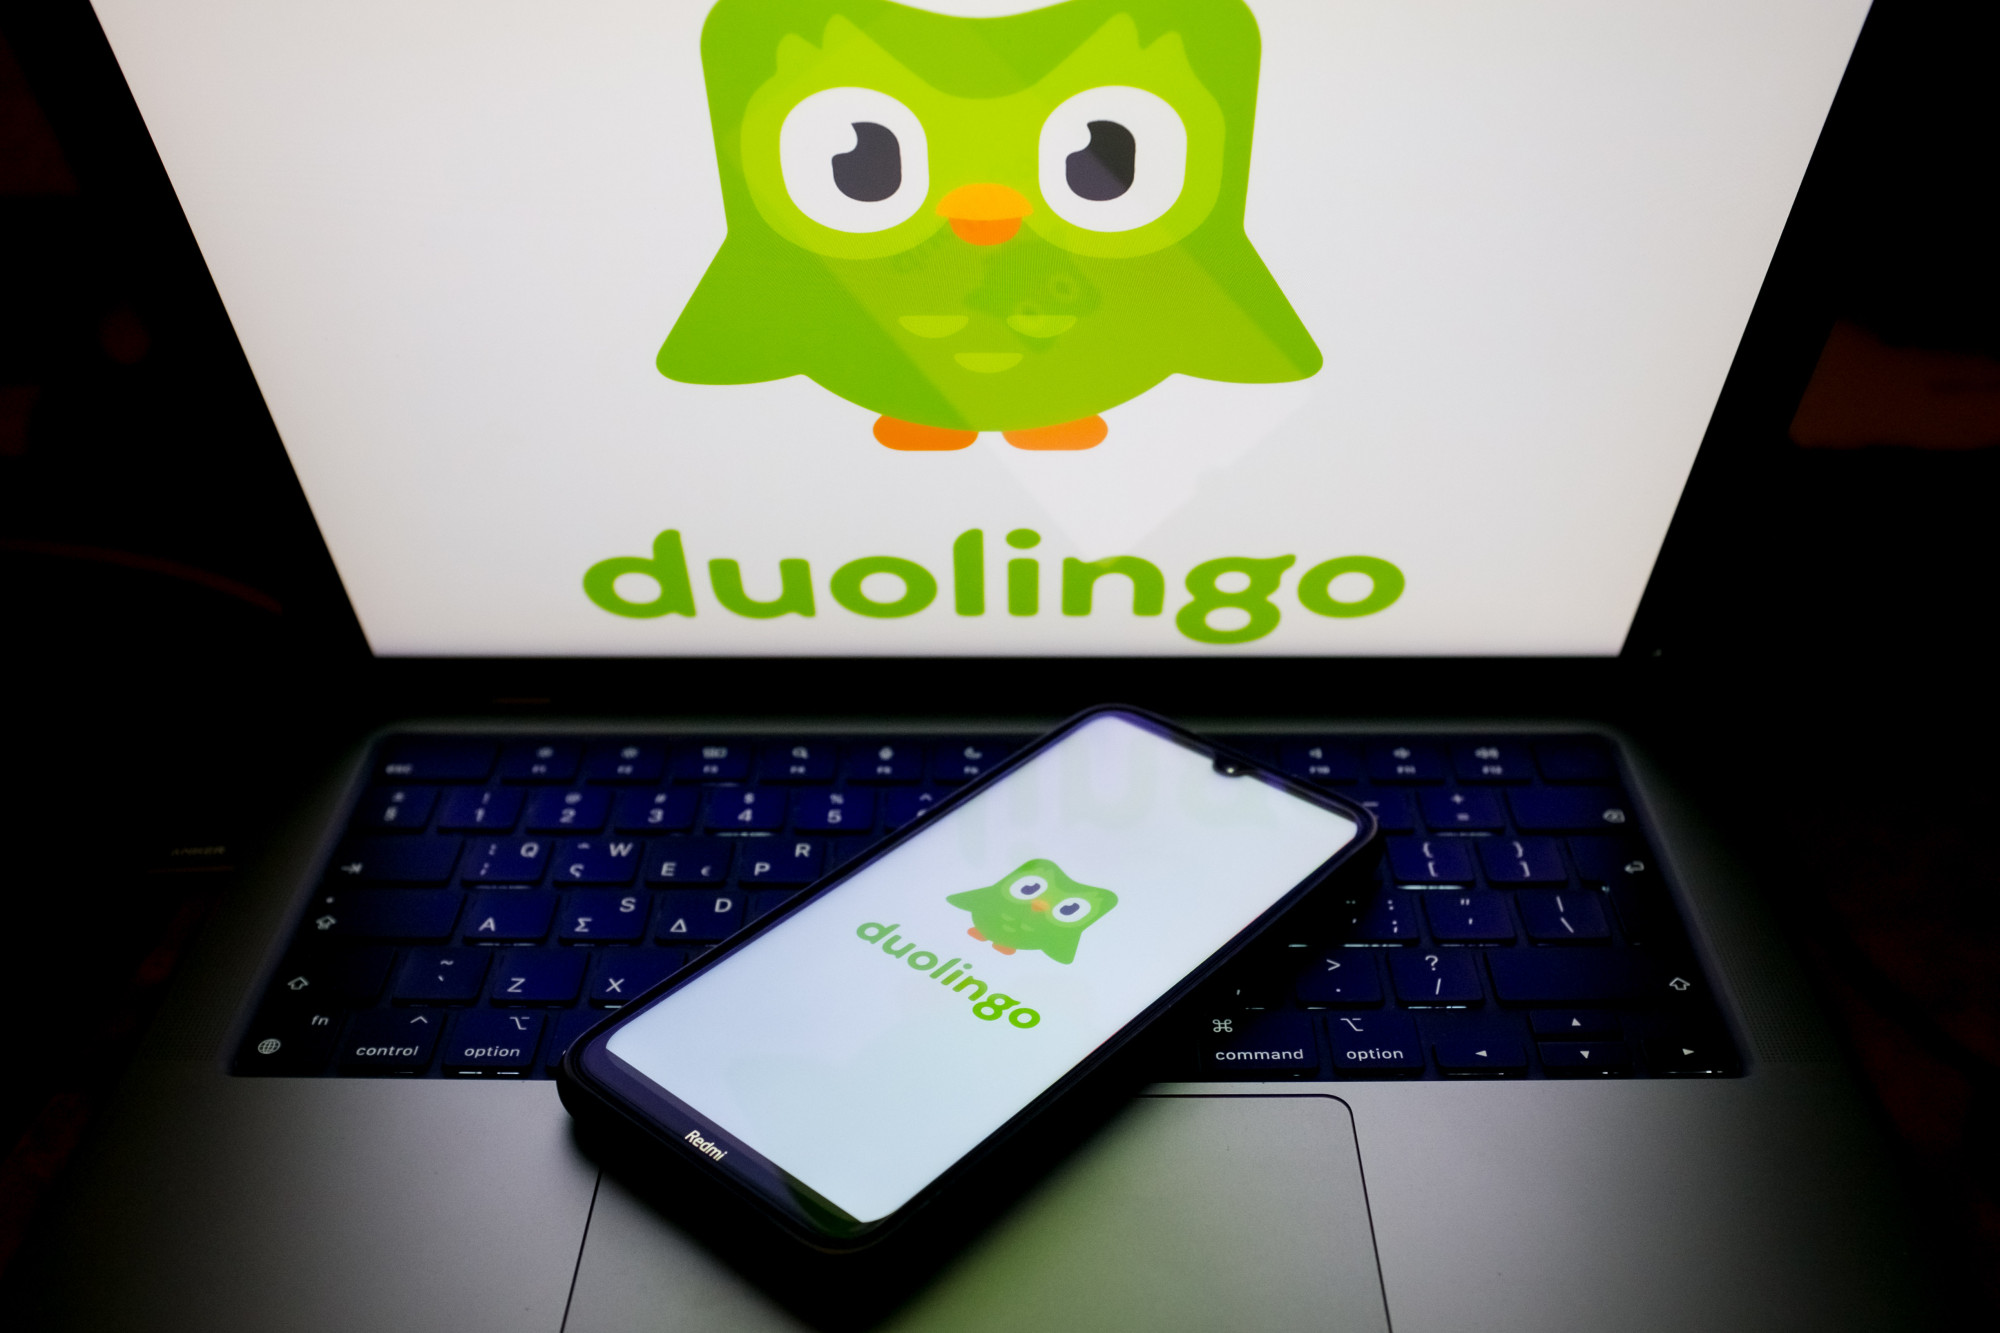 Minden melegekre vonatkozó információt törölt orosz appjából a Duolingo